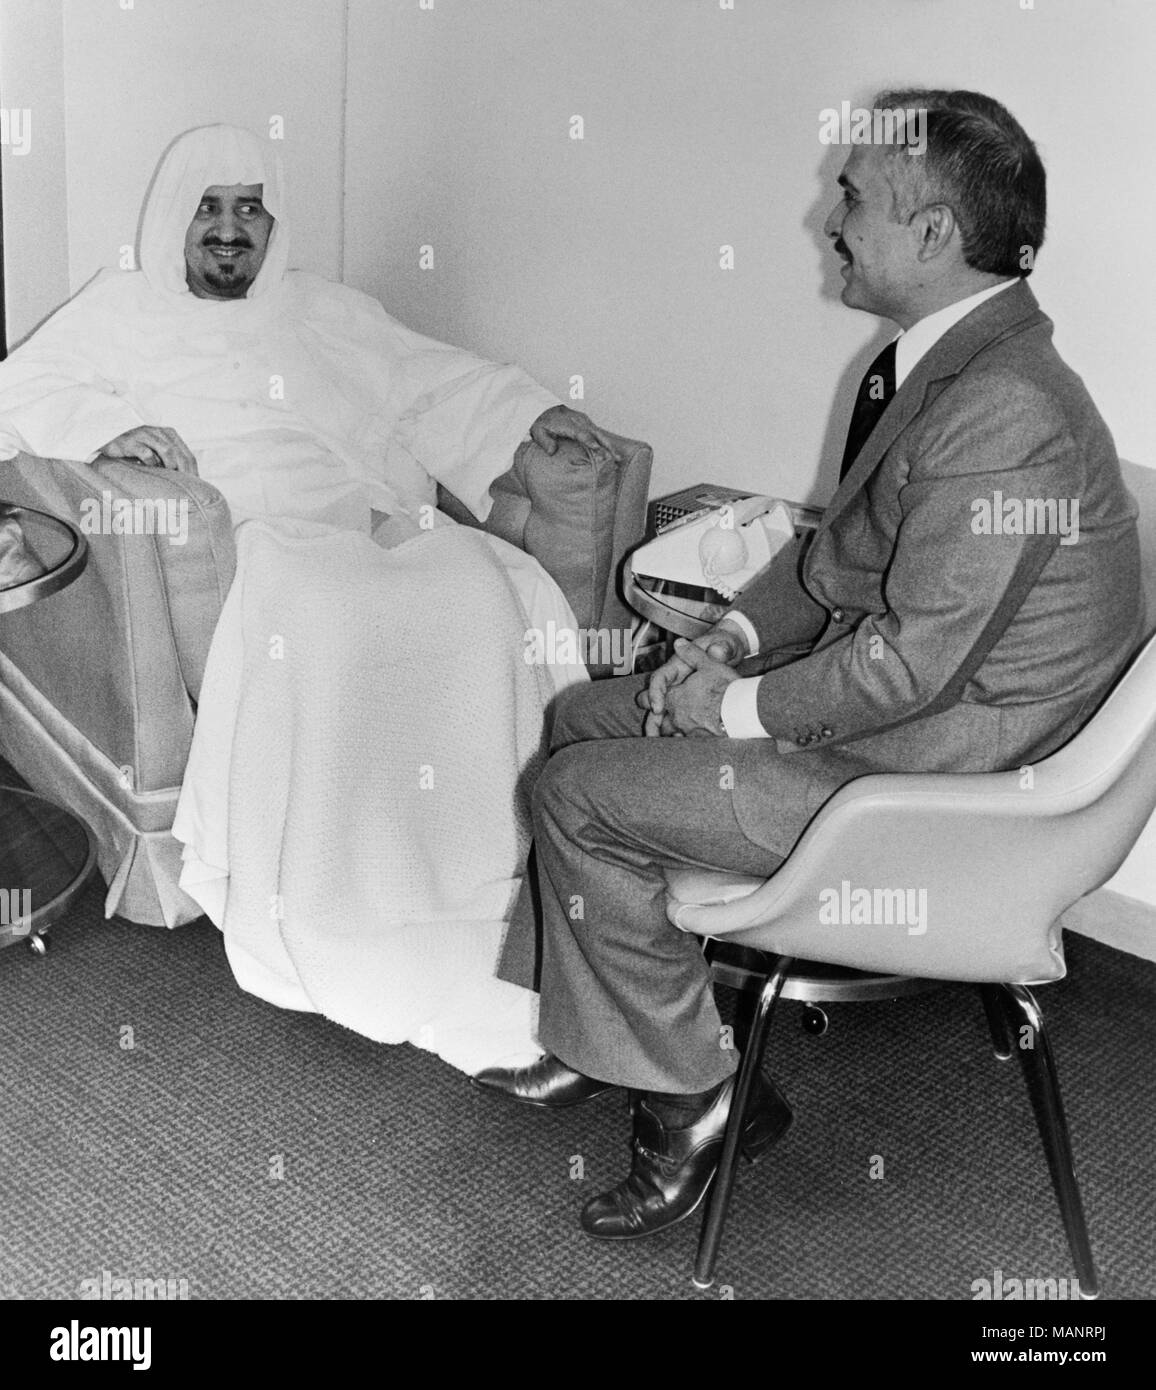 Il 24 febbraio 1977. Londra. Re Hussein di Giordania visite King Khaled di Arabia Saudita all'ospedale di Londra dove il re si sta riprendendo da un'operazione all'anca. il 64 enne Saudi Arabian Re Hussein ha ricevuto nella sua suite al Wellington Ospedale di San Giovanni Bosco. Foto Stock